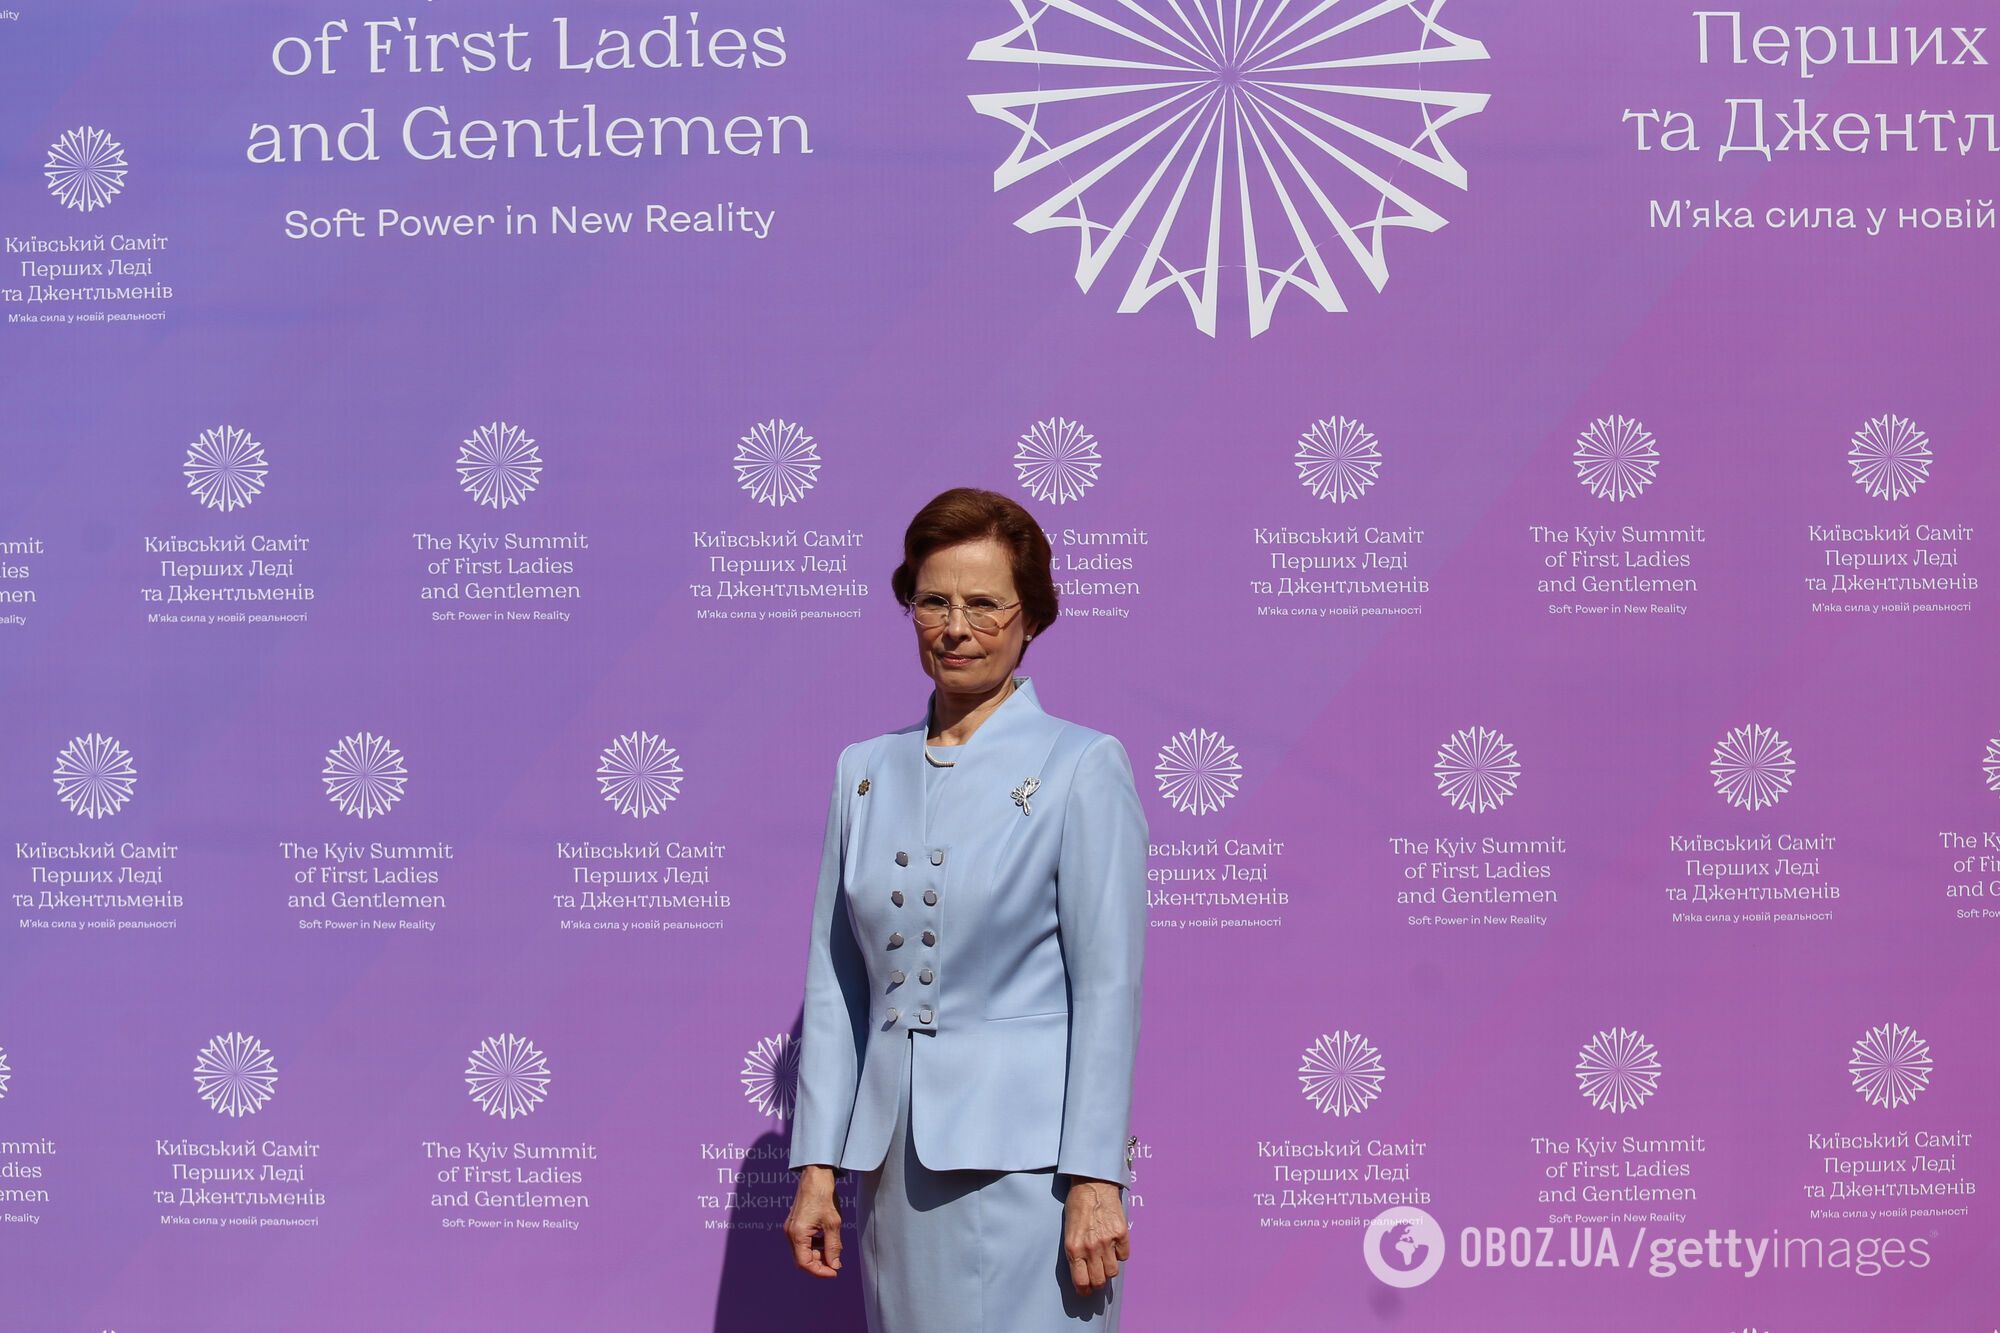 Жена главы Латвии сразу выразила солидарность